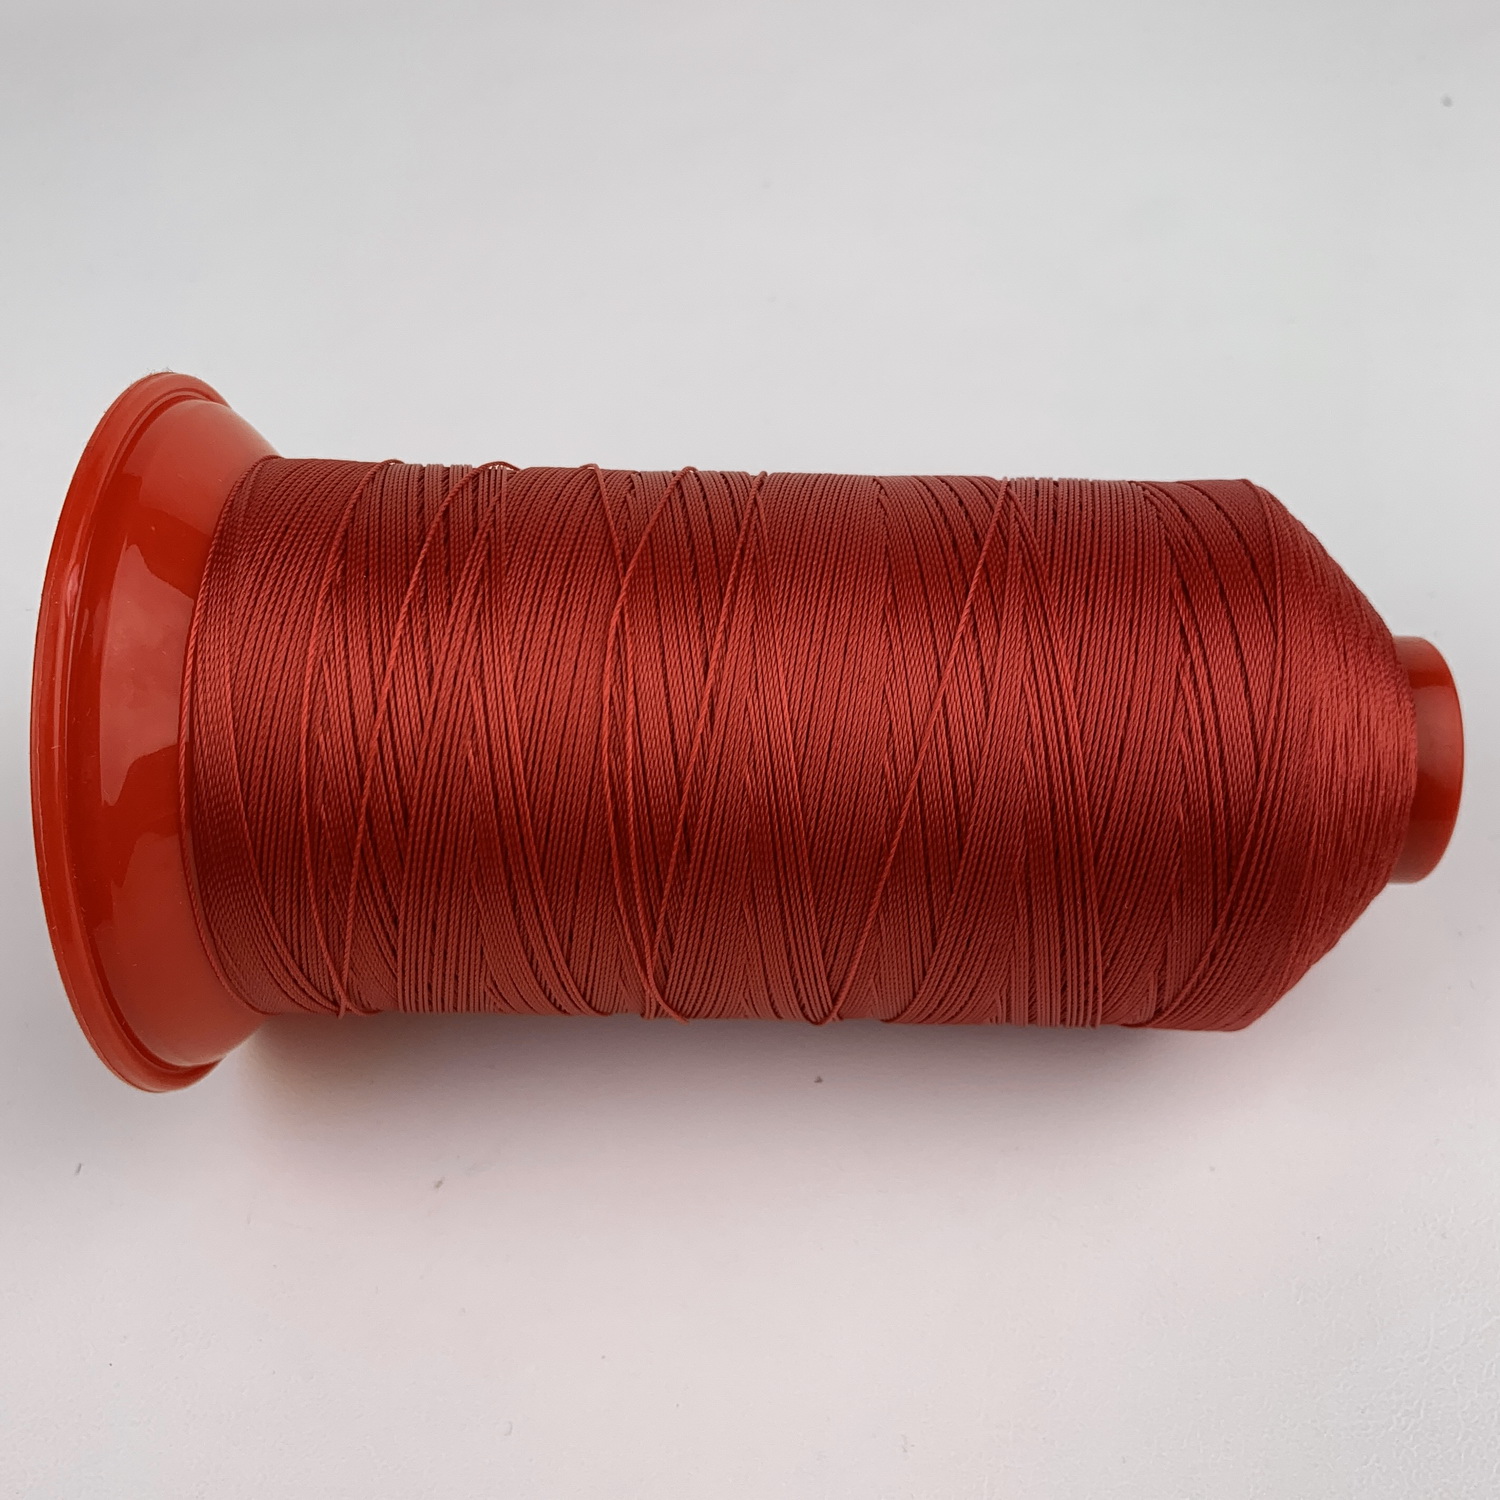 Нить POLYART(ПОЛИАРТ) N20 цвет 1644 красный, для пошив чехлов на автомобильные сидения и руль, 1500м детальная фотка